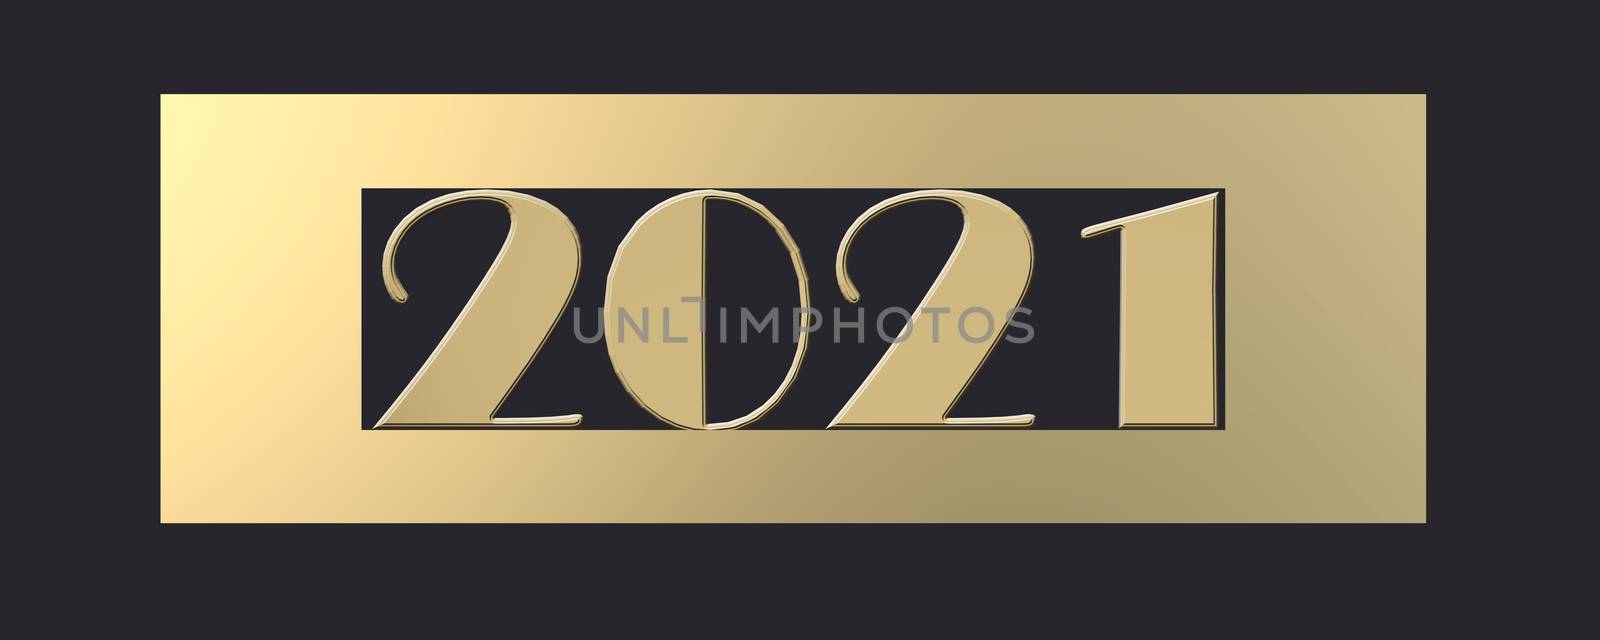 2021 Happy New Year by NelliPolk